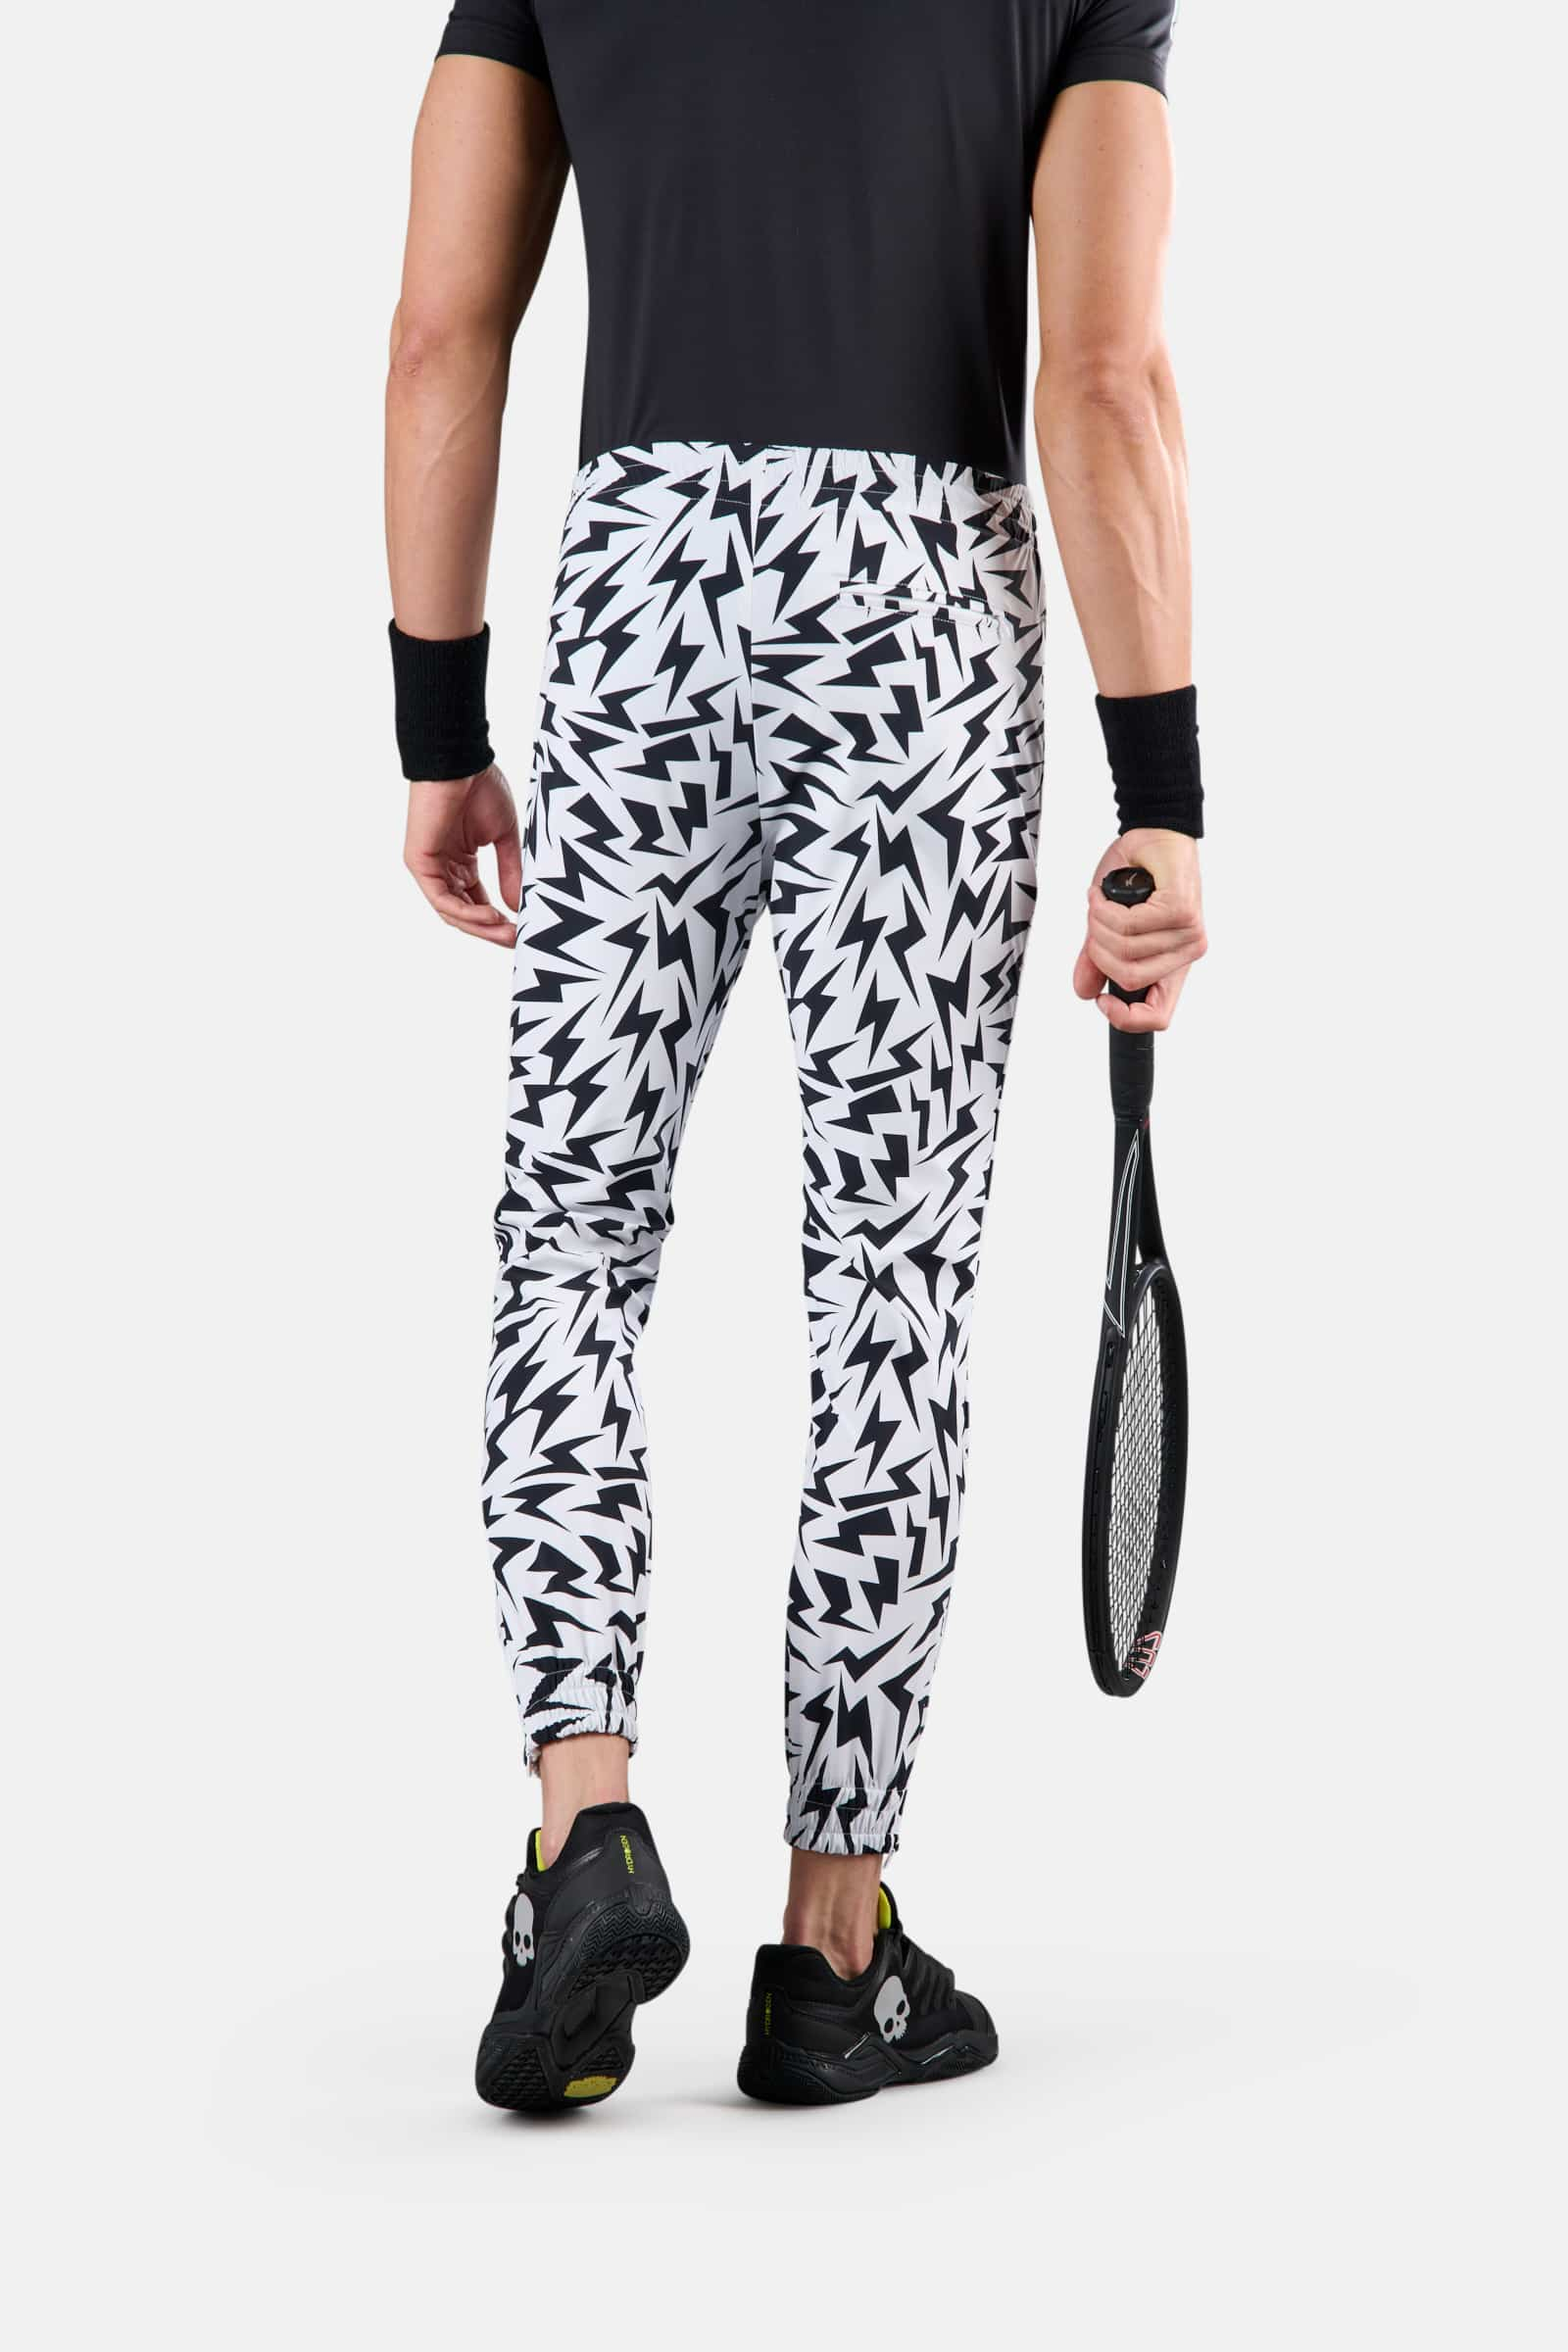 THUNDERS TECH PANTS - WHITE,BLACK - Hydrogen - Luxury Sportwear